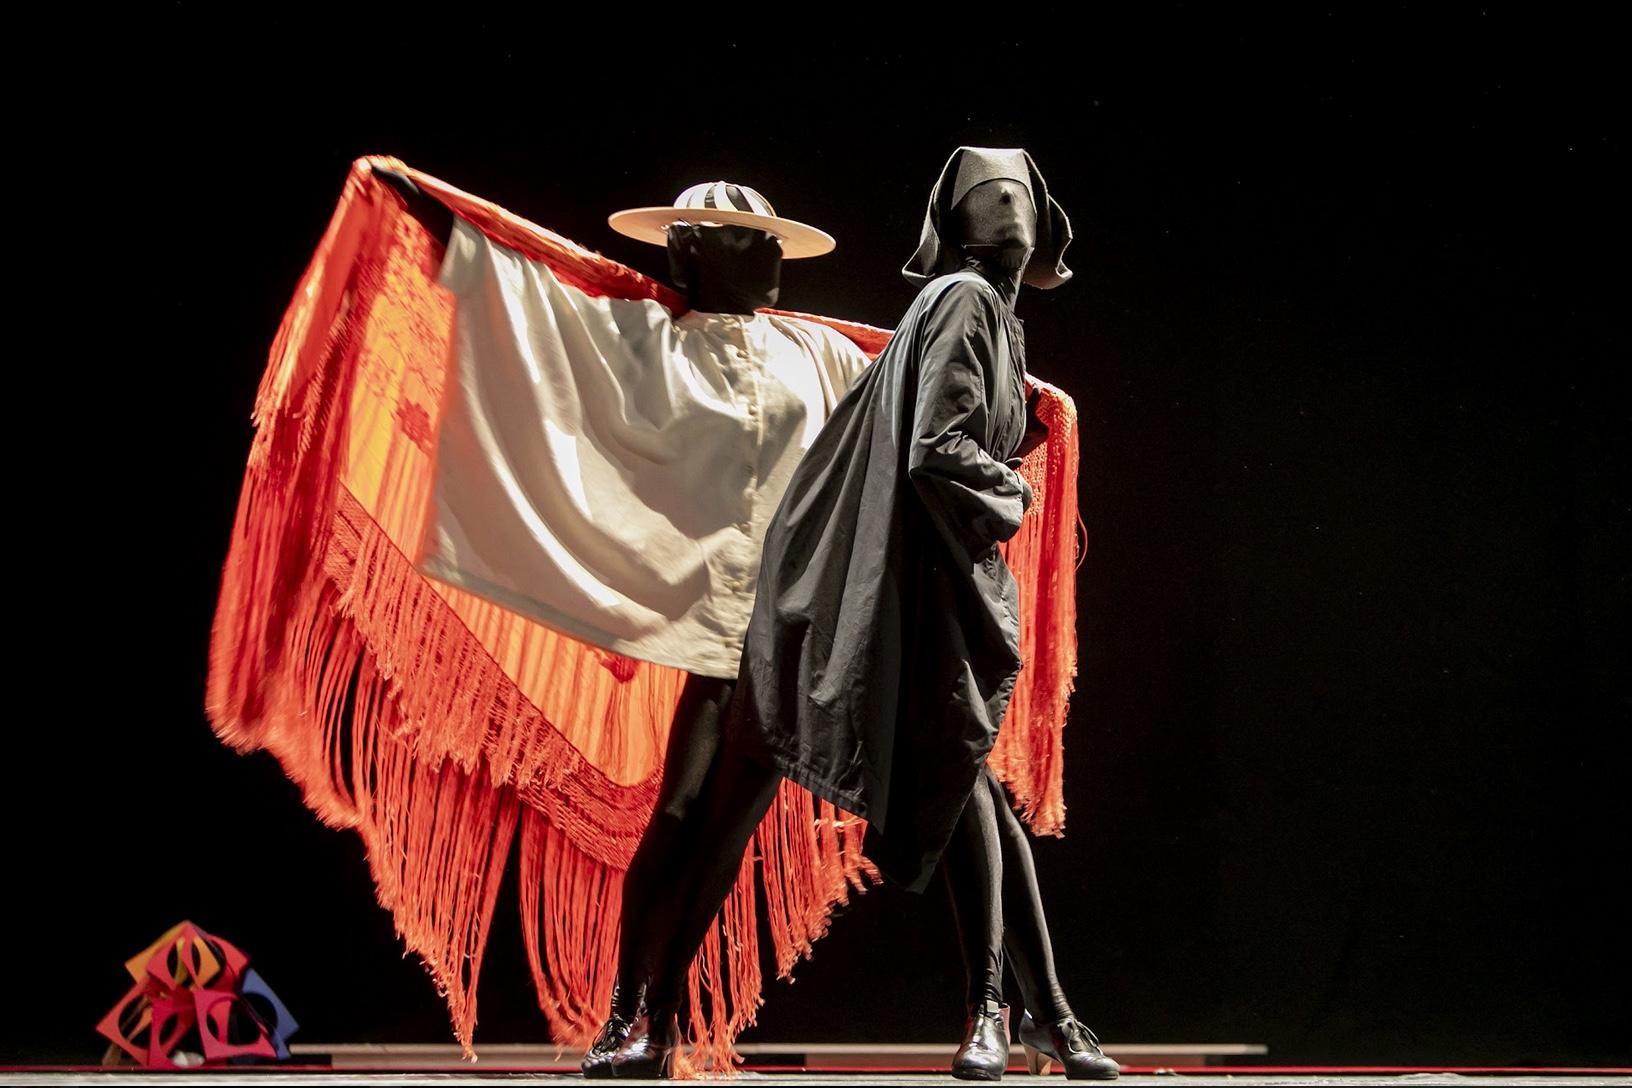 Andrés Marín lleva su baile flamenco contemporáneo a Teatros del Canal en Madrid con Éxtasis / Ravel (Show andaluz)